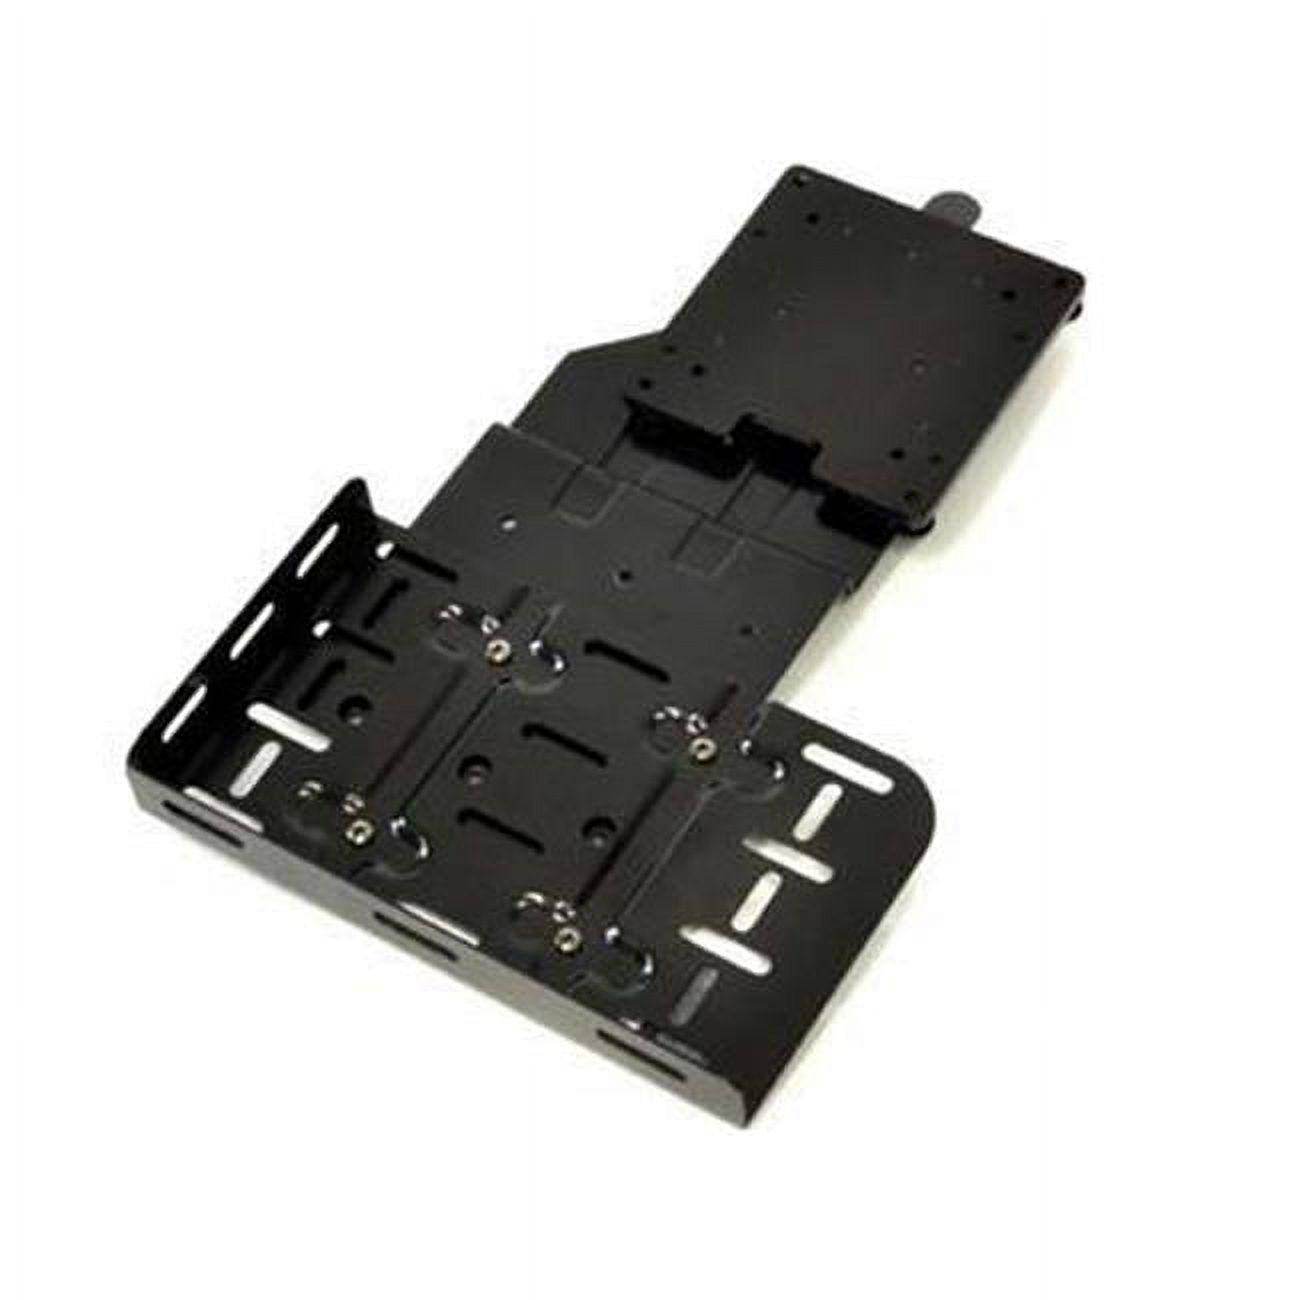 Ergotron 97-527-009 Mounting Adapter Kit, Black - image 1 of 2